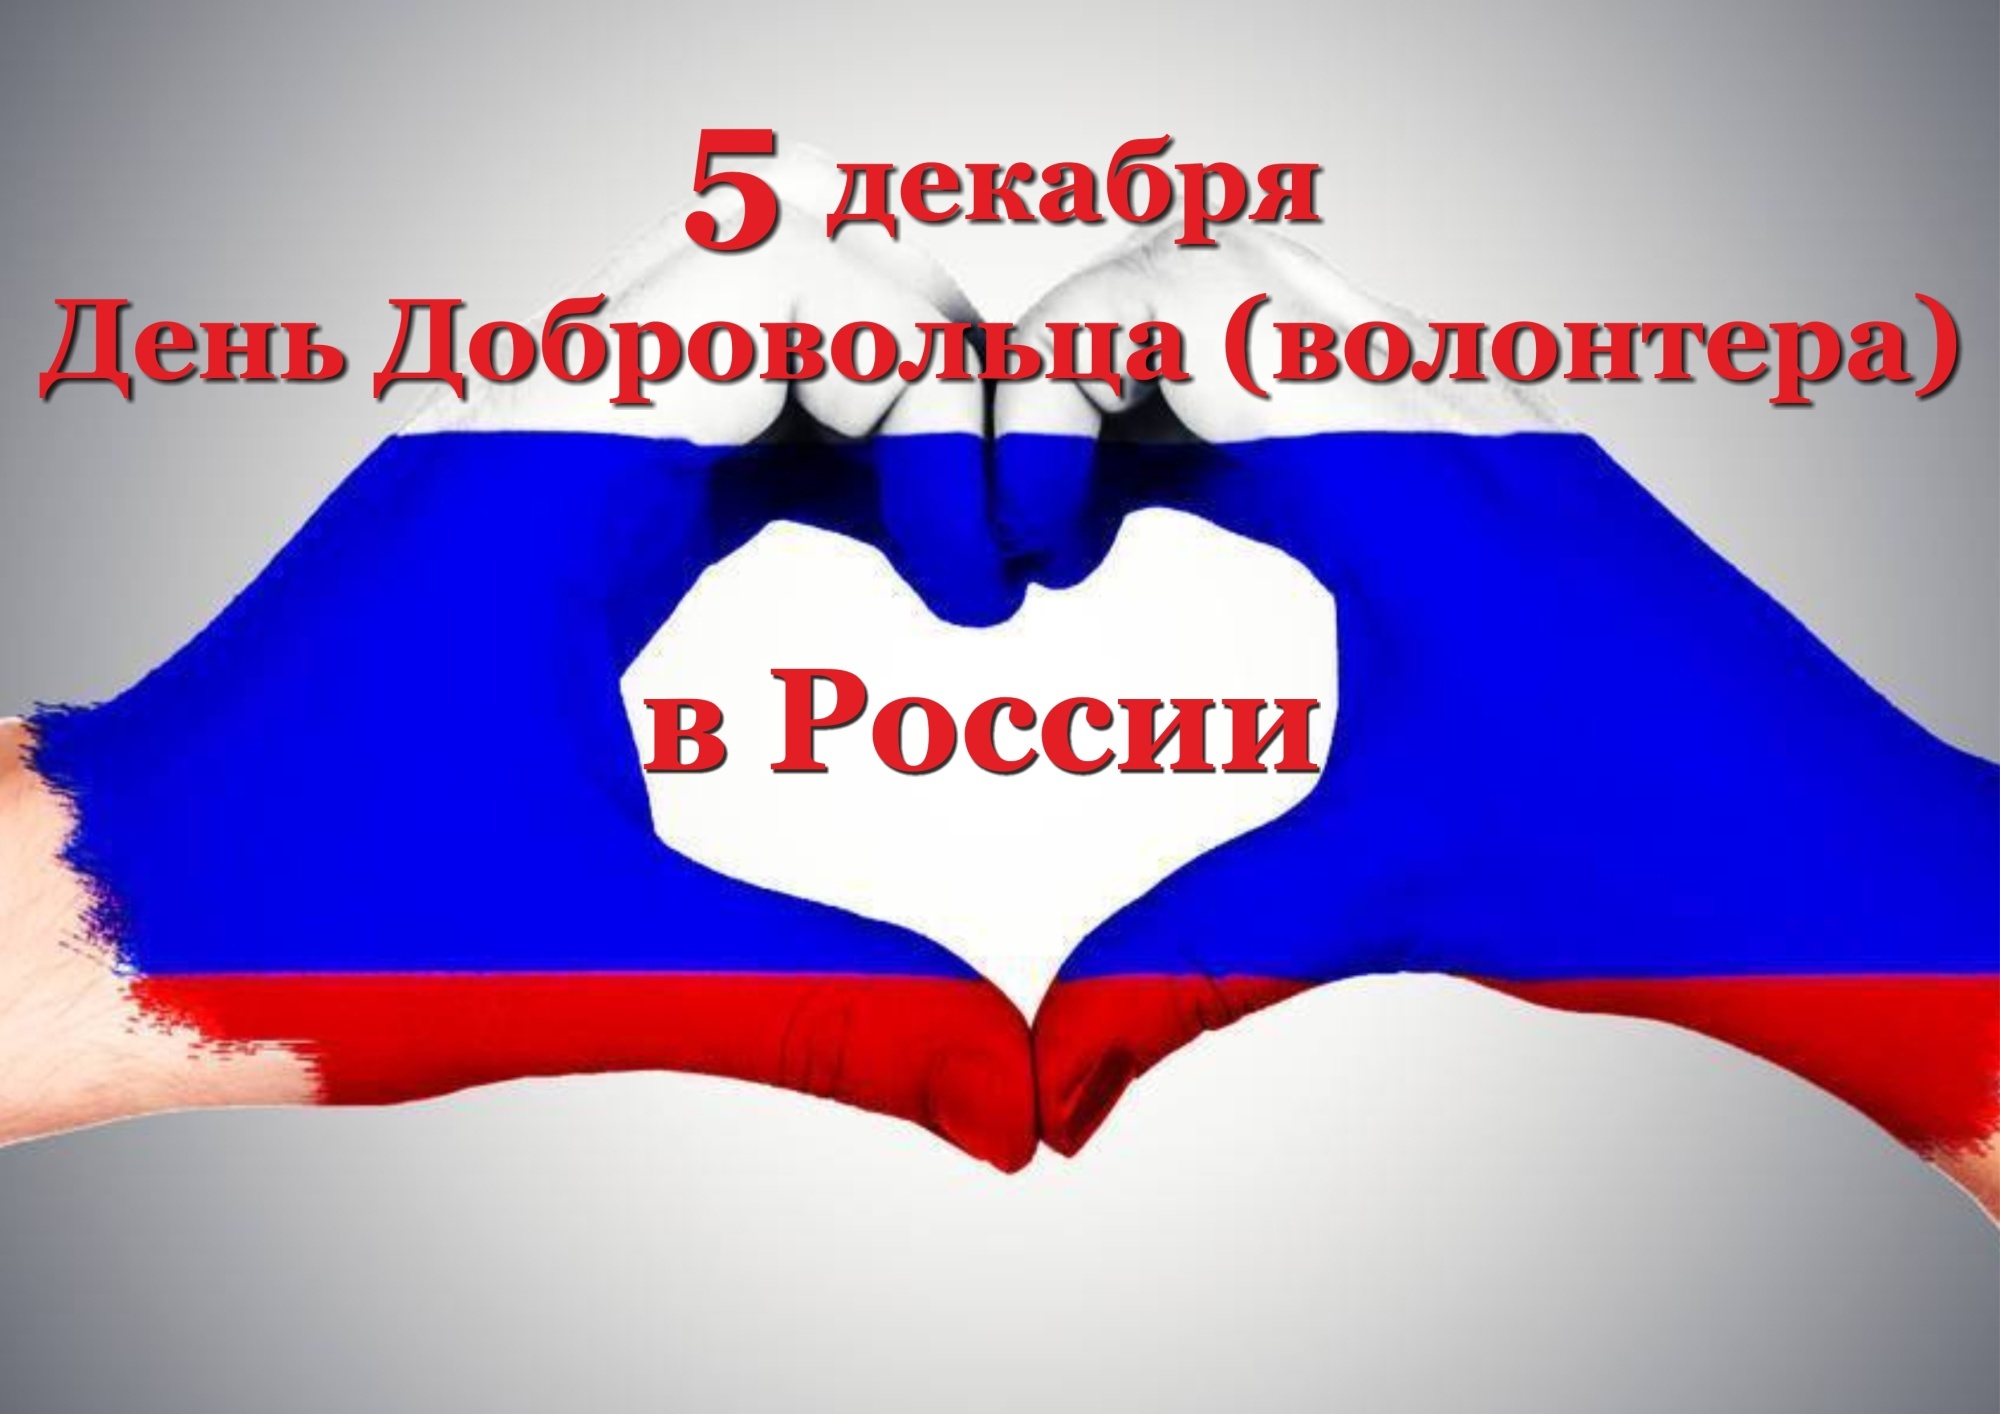 5 декабря в России отмечается День добровольца (волонтёра).